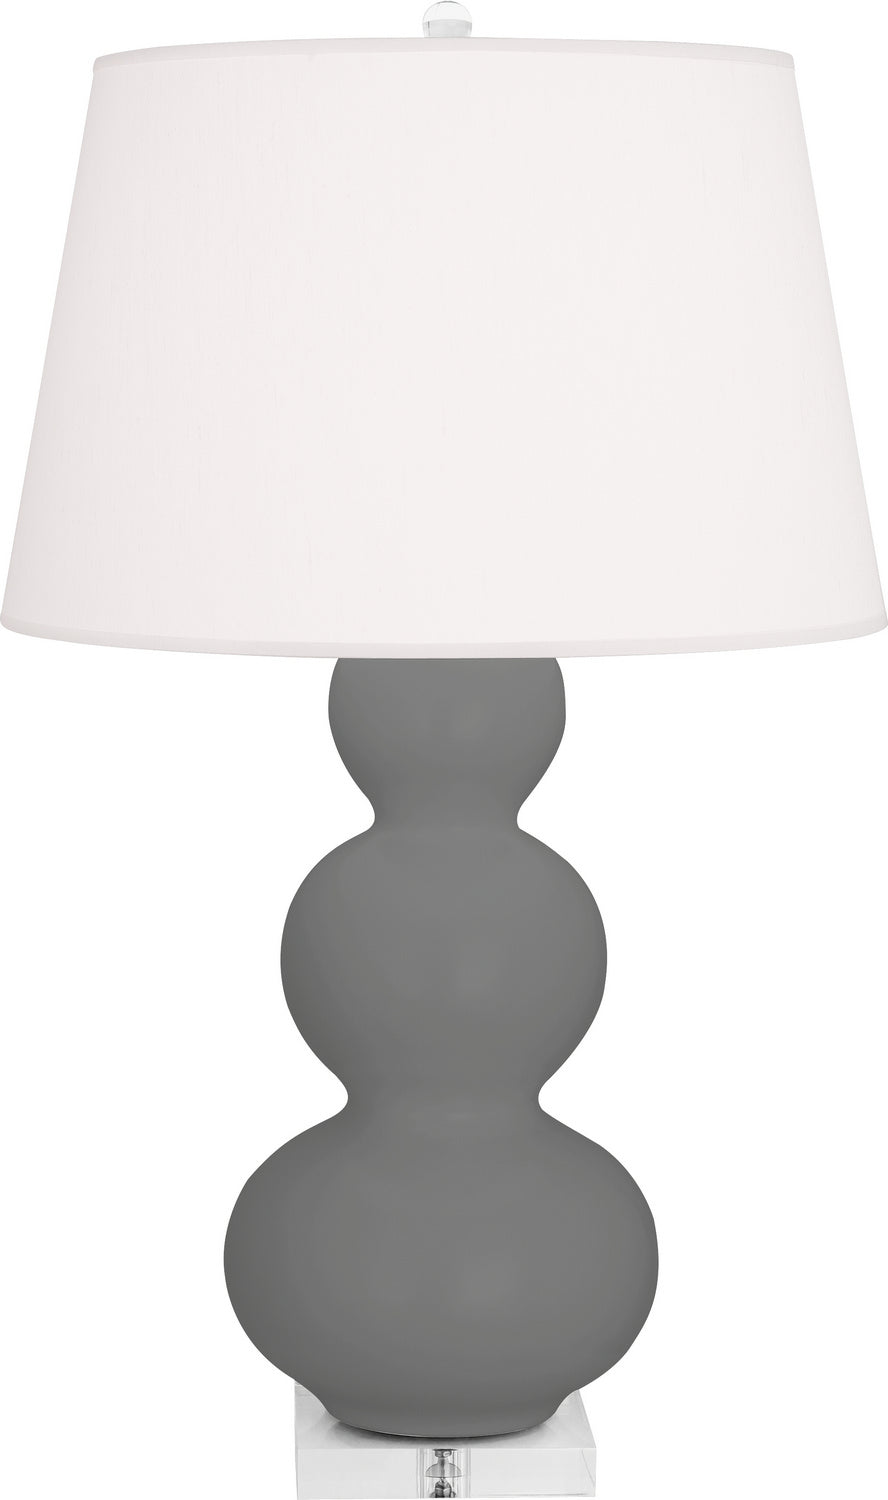 Robert Abbey - One Light Table Lamp - Triple Gourd - Matte Ash Glazed Ceramic w/Lucite Base- Union Lighting Luminaires Decor